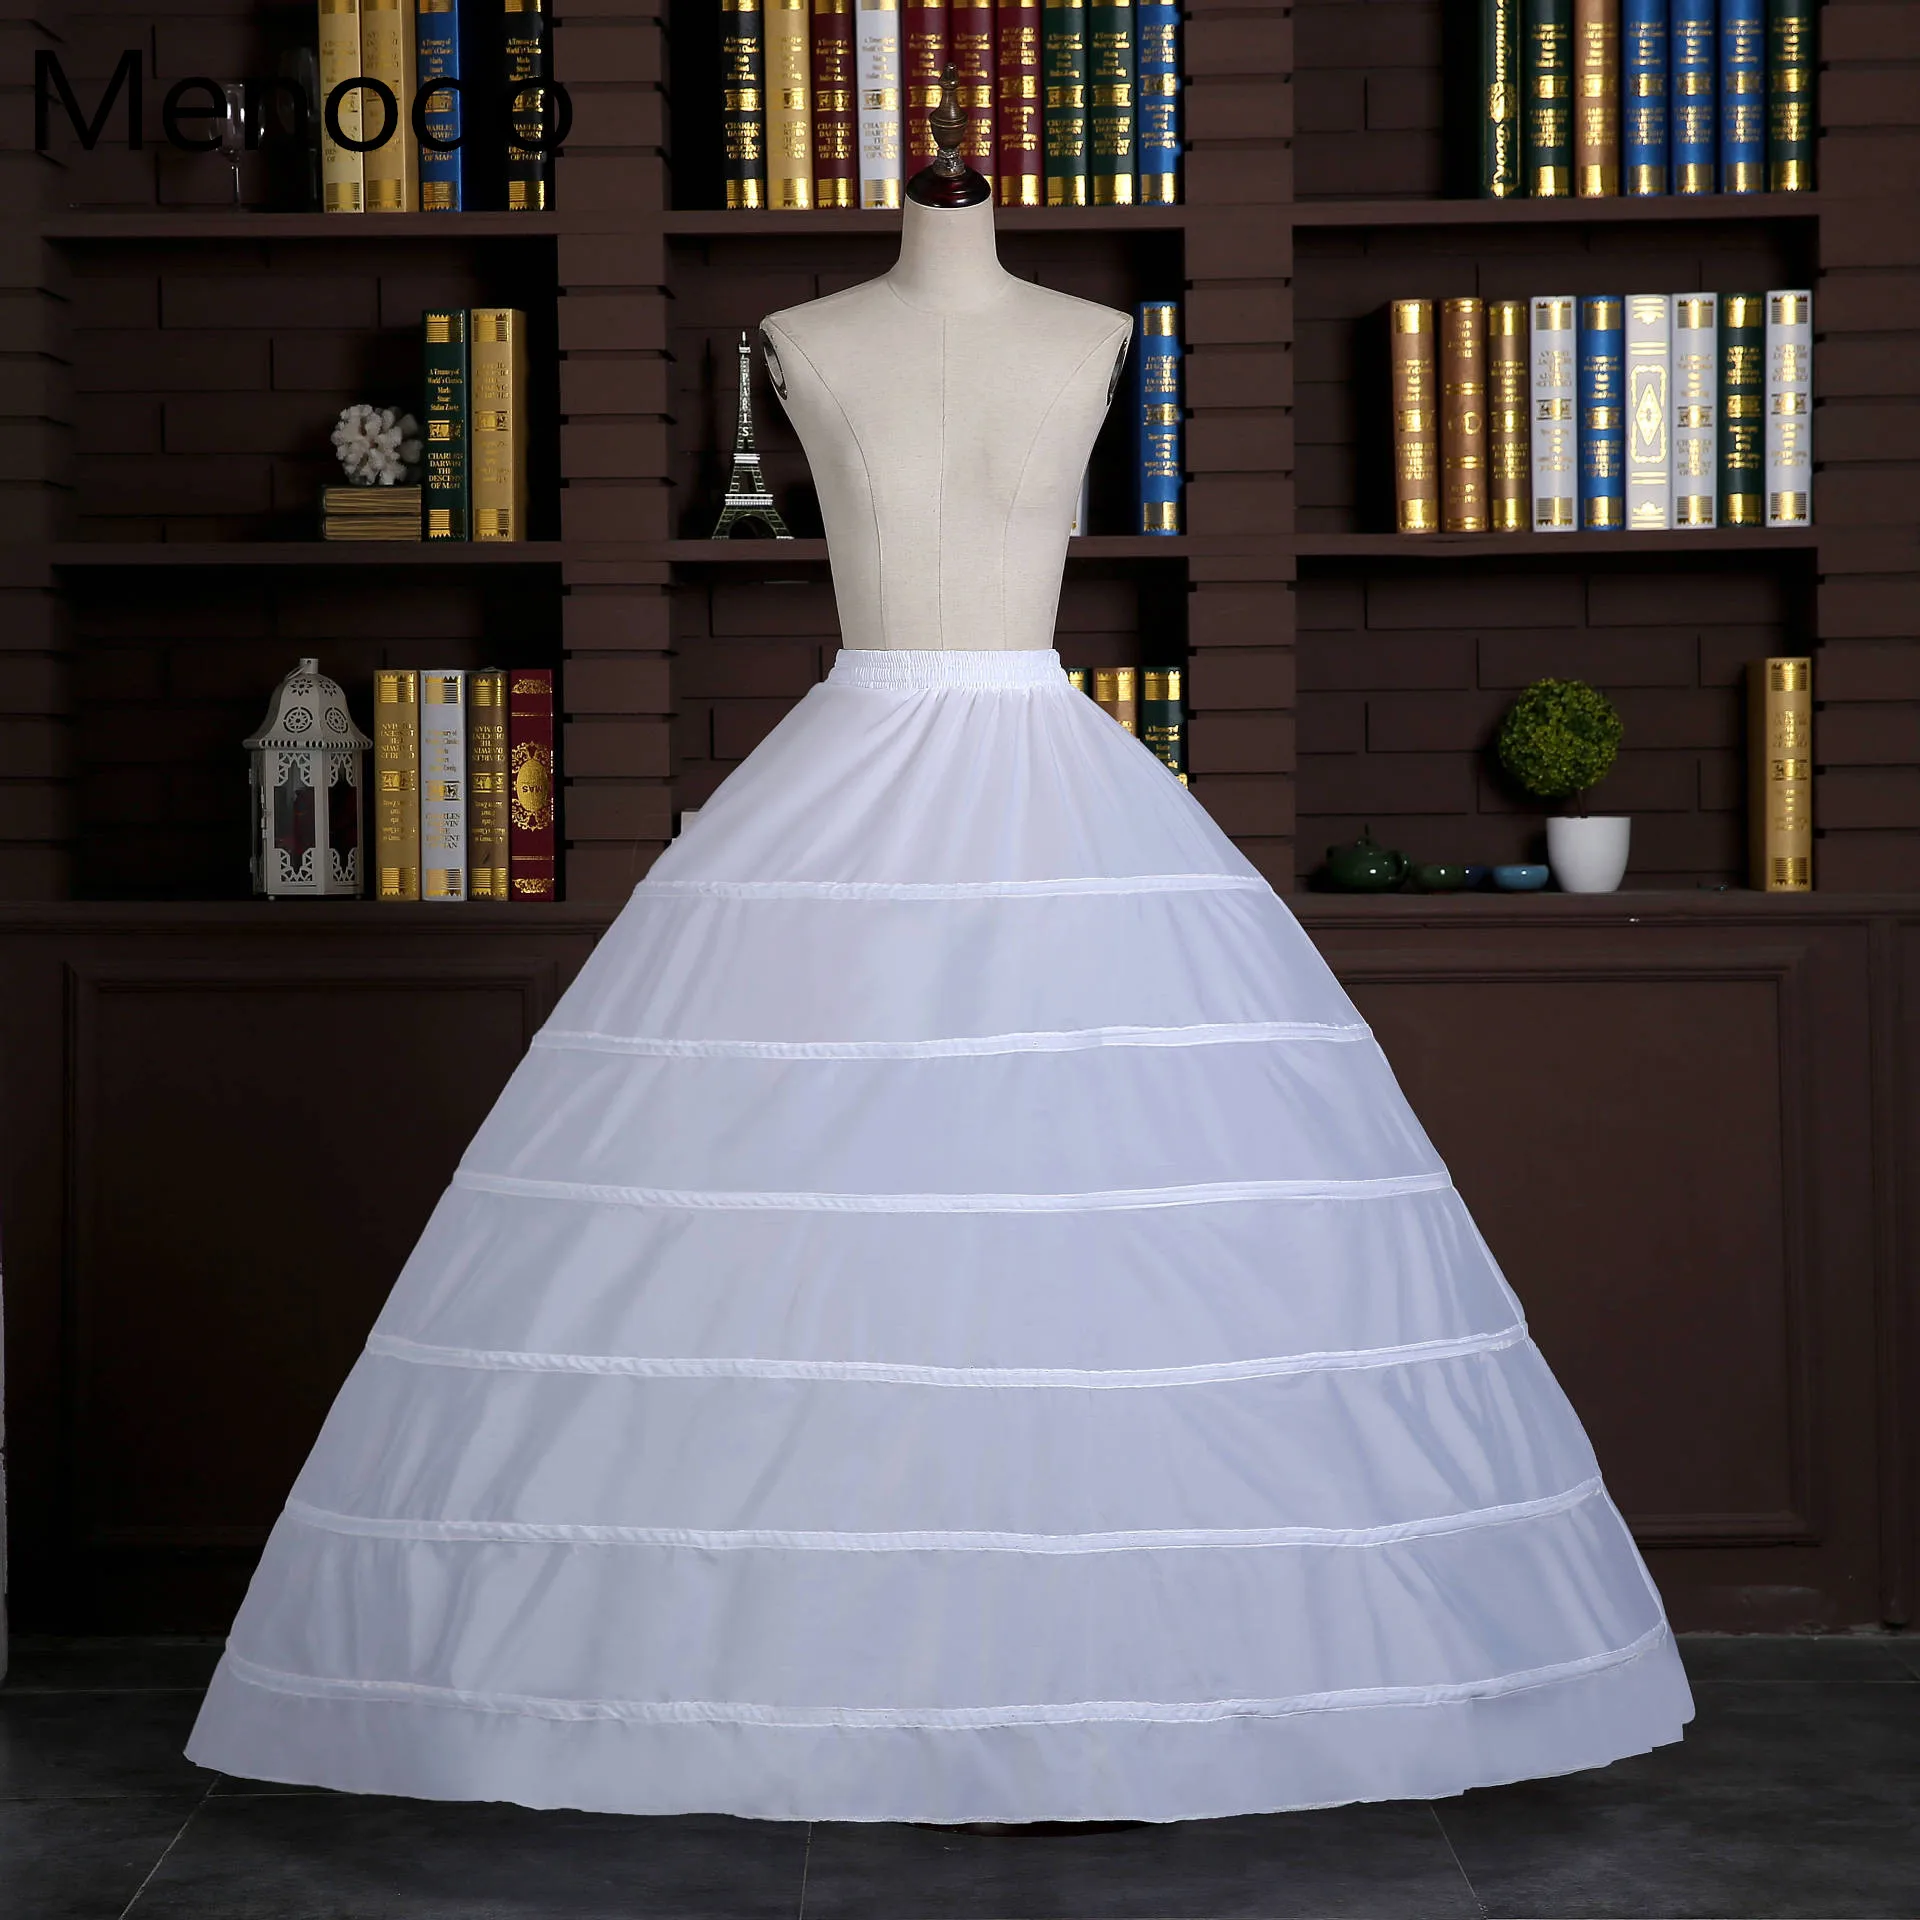 

Регулируемый Белый подъюбник на 6 обручей, бальное платье из кринолина, Свадебный подъюбник, свадебные платья, аксессуары